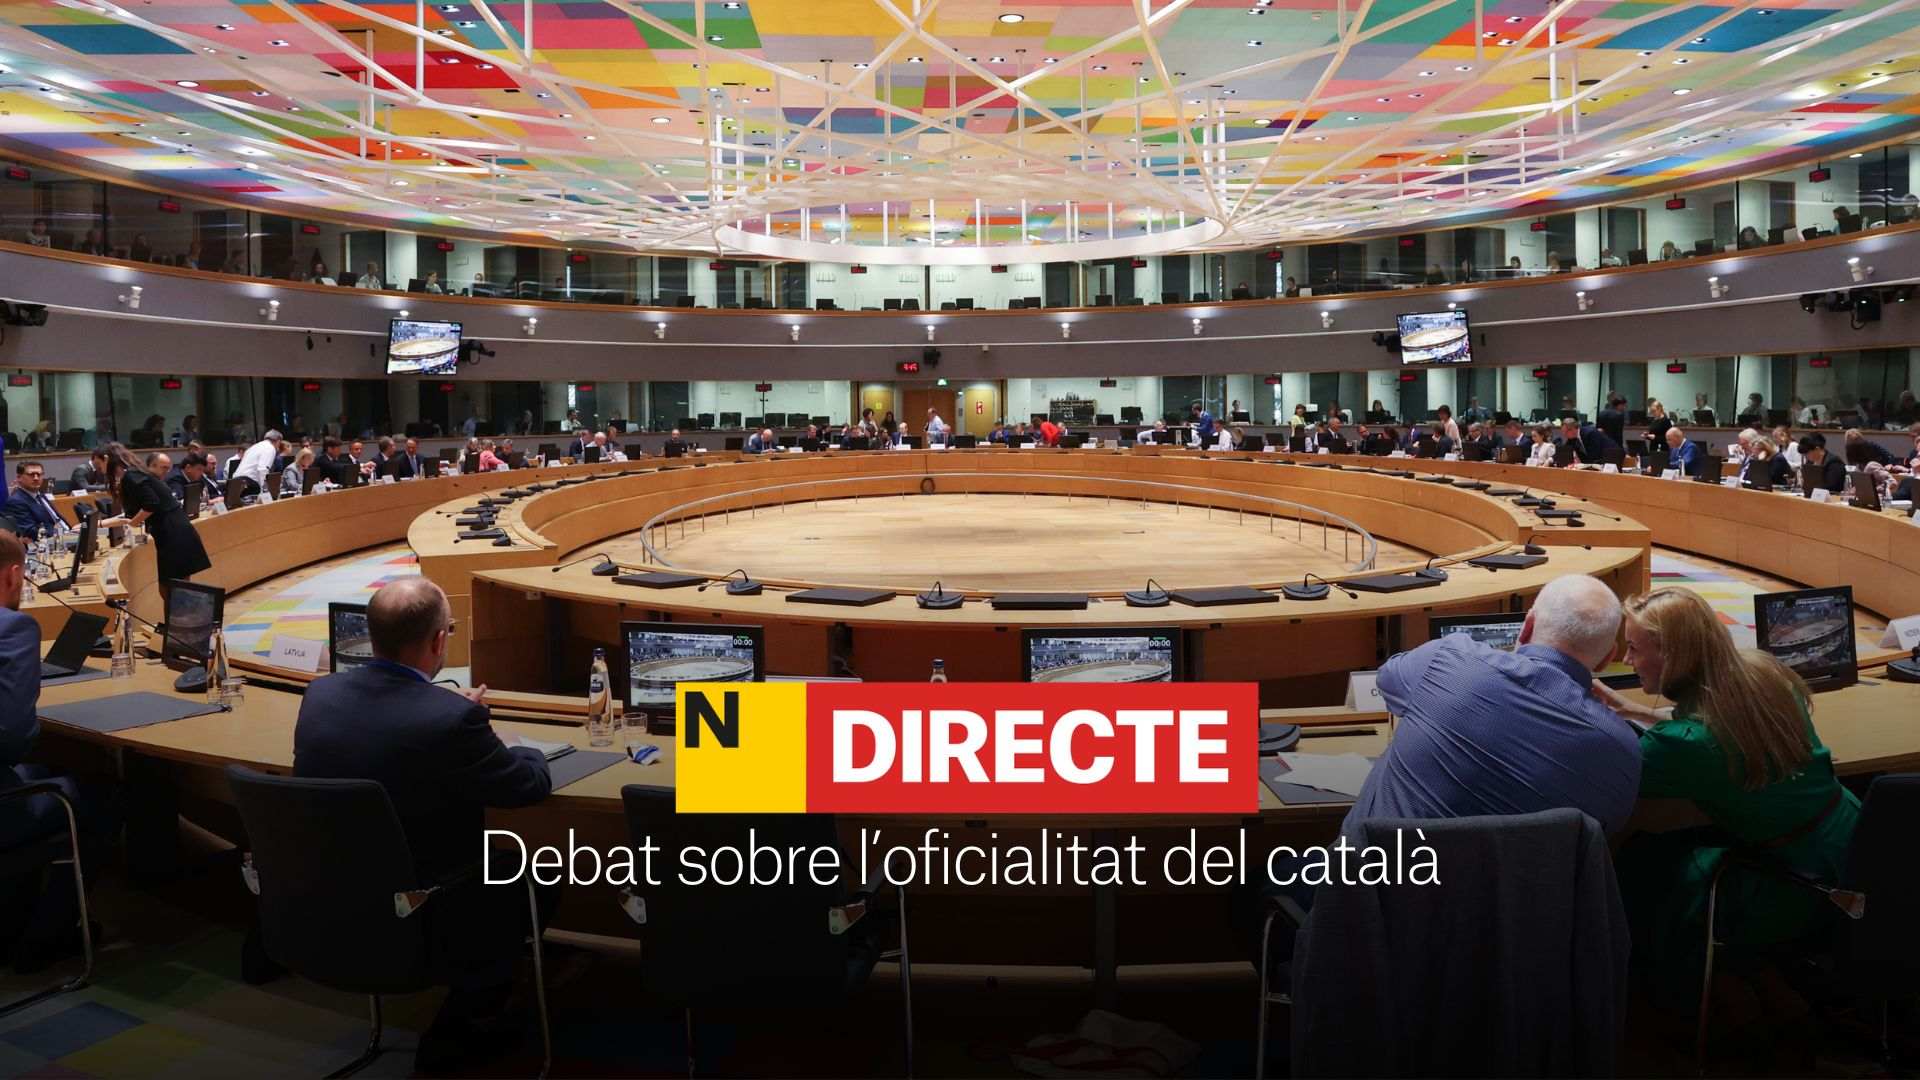 Debate sobre la oficialidad del catalán en la UE, DIRECTO | Última hora del Consejo de Asuntos Generales en Luxemburgo